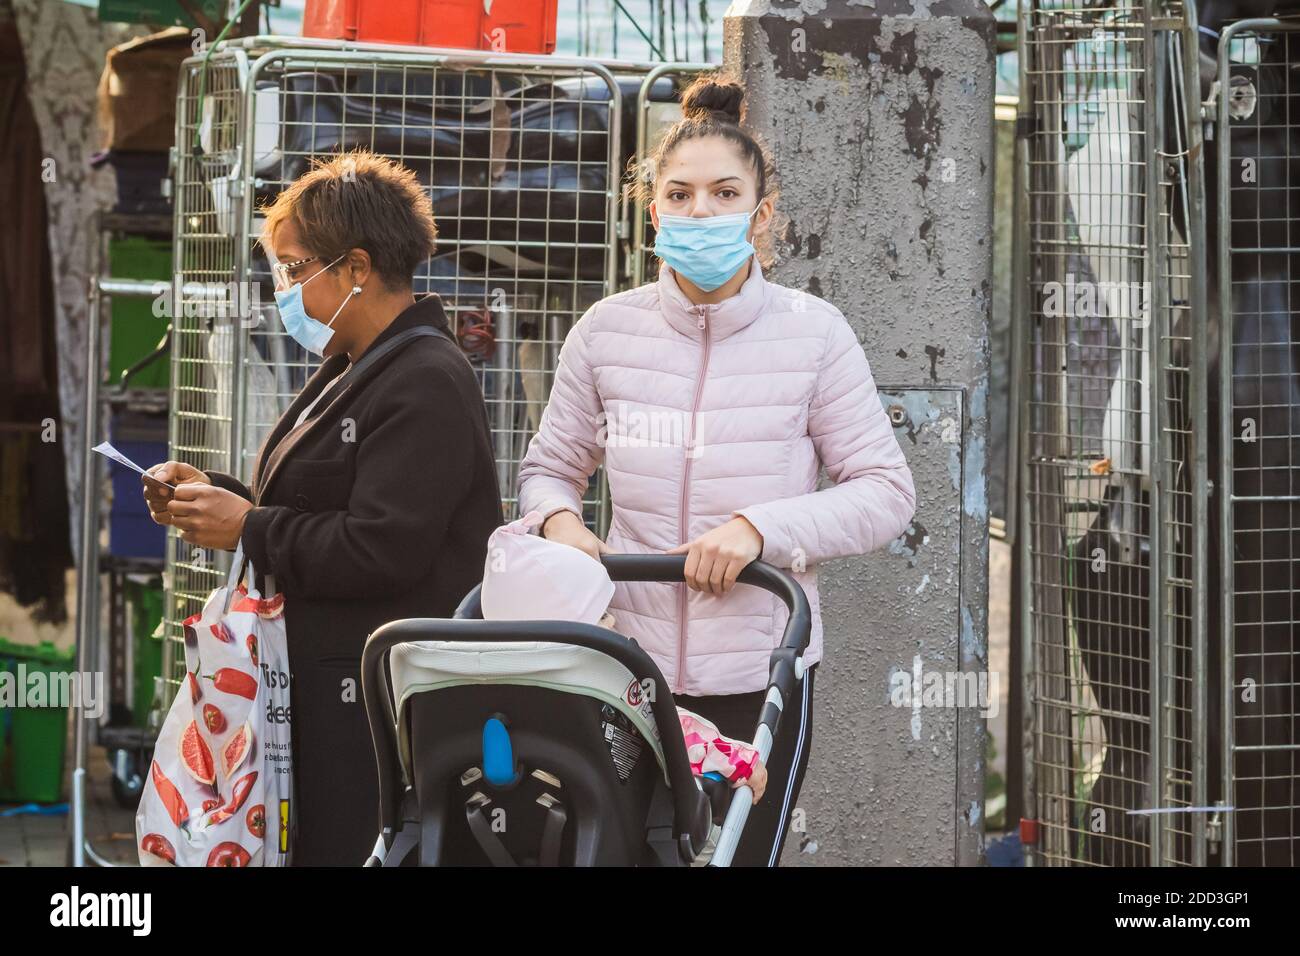 Londra, UK - 3 novembre 2020 - una giovane madre che indossa una maschera mentre spinge un passeggino nel mercato di Walthamstow Foto Stock